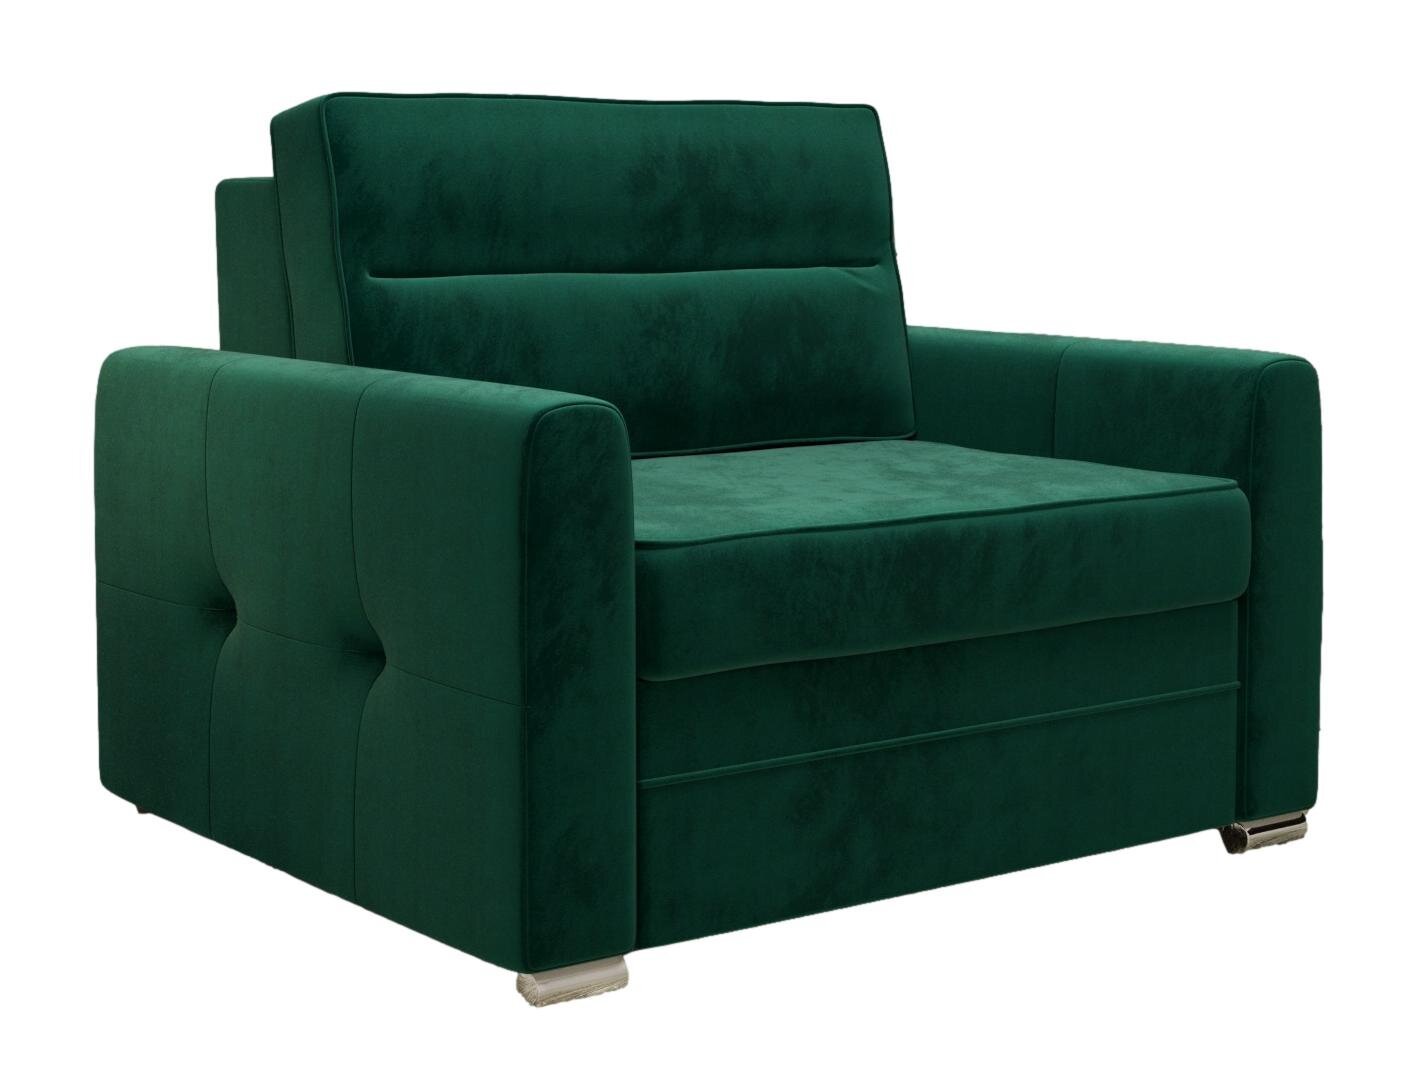 Miegamasis fotelis ART 100, žalia kaina | pigu.lt